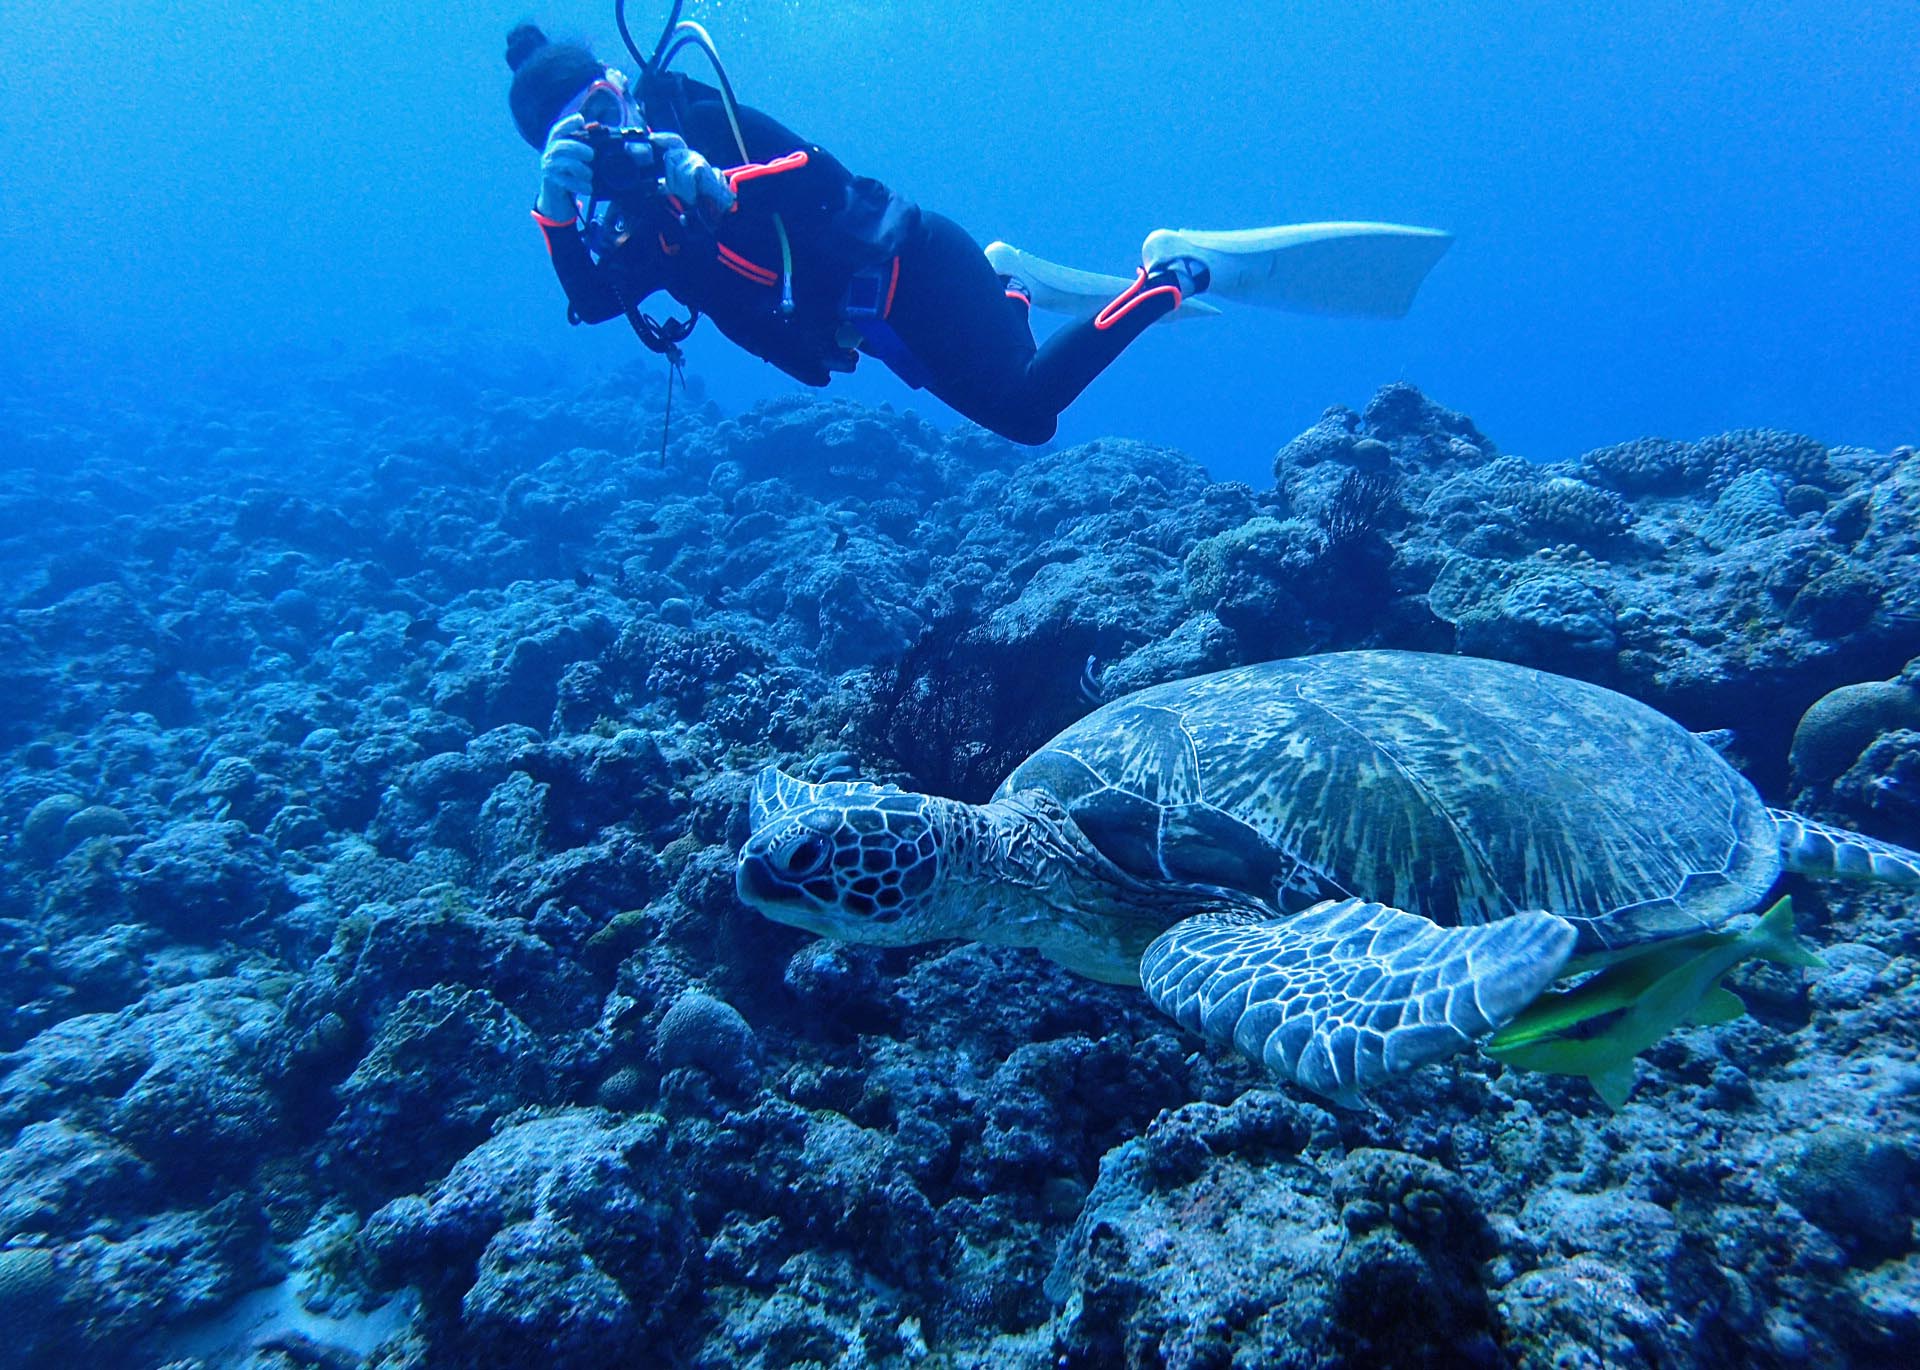 沖縄ダイビングショップKAHANAが開催する糸満ダイビングポイント「トコマサリ礁東」はウミガメと遭遇できます